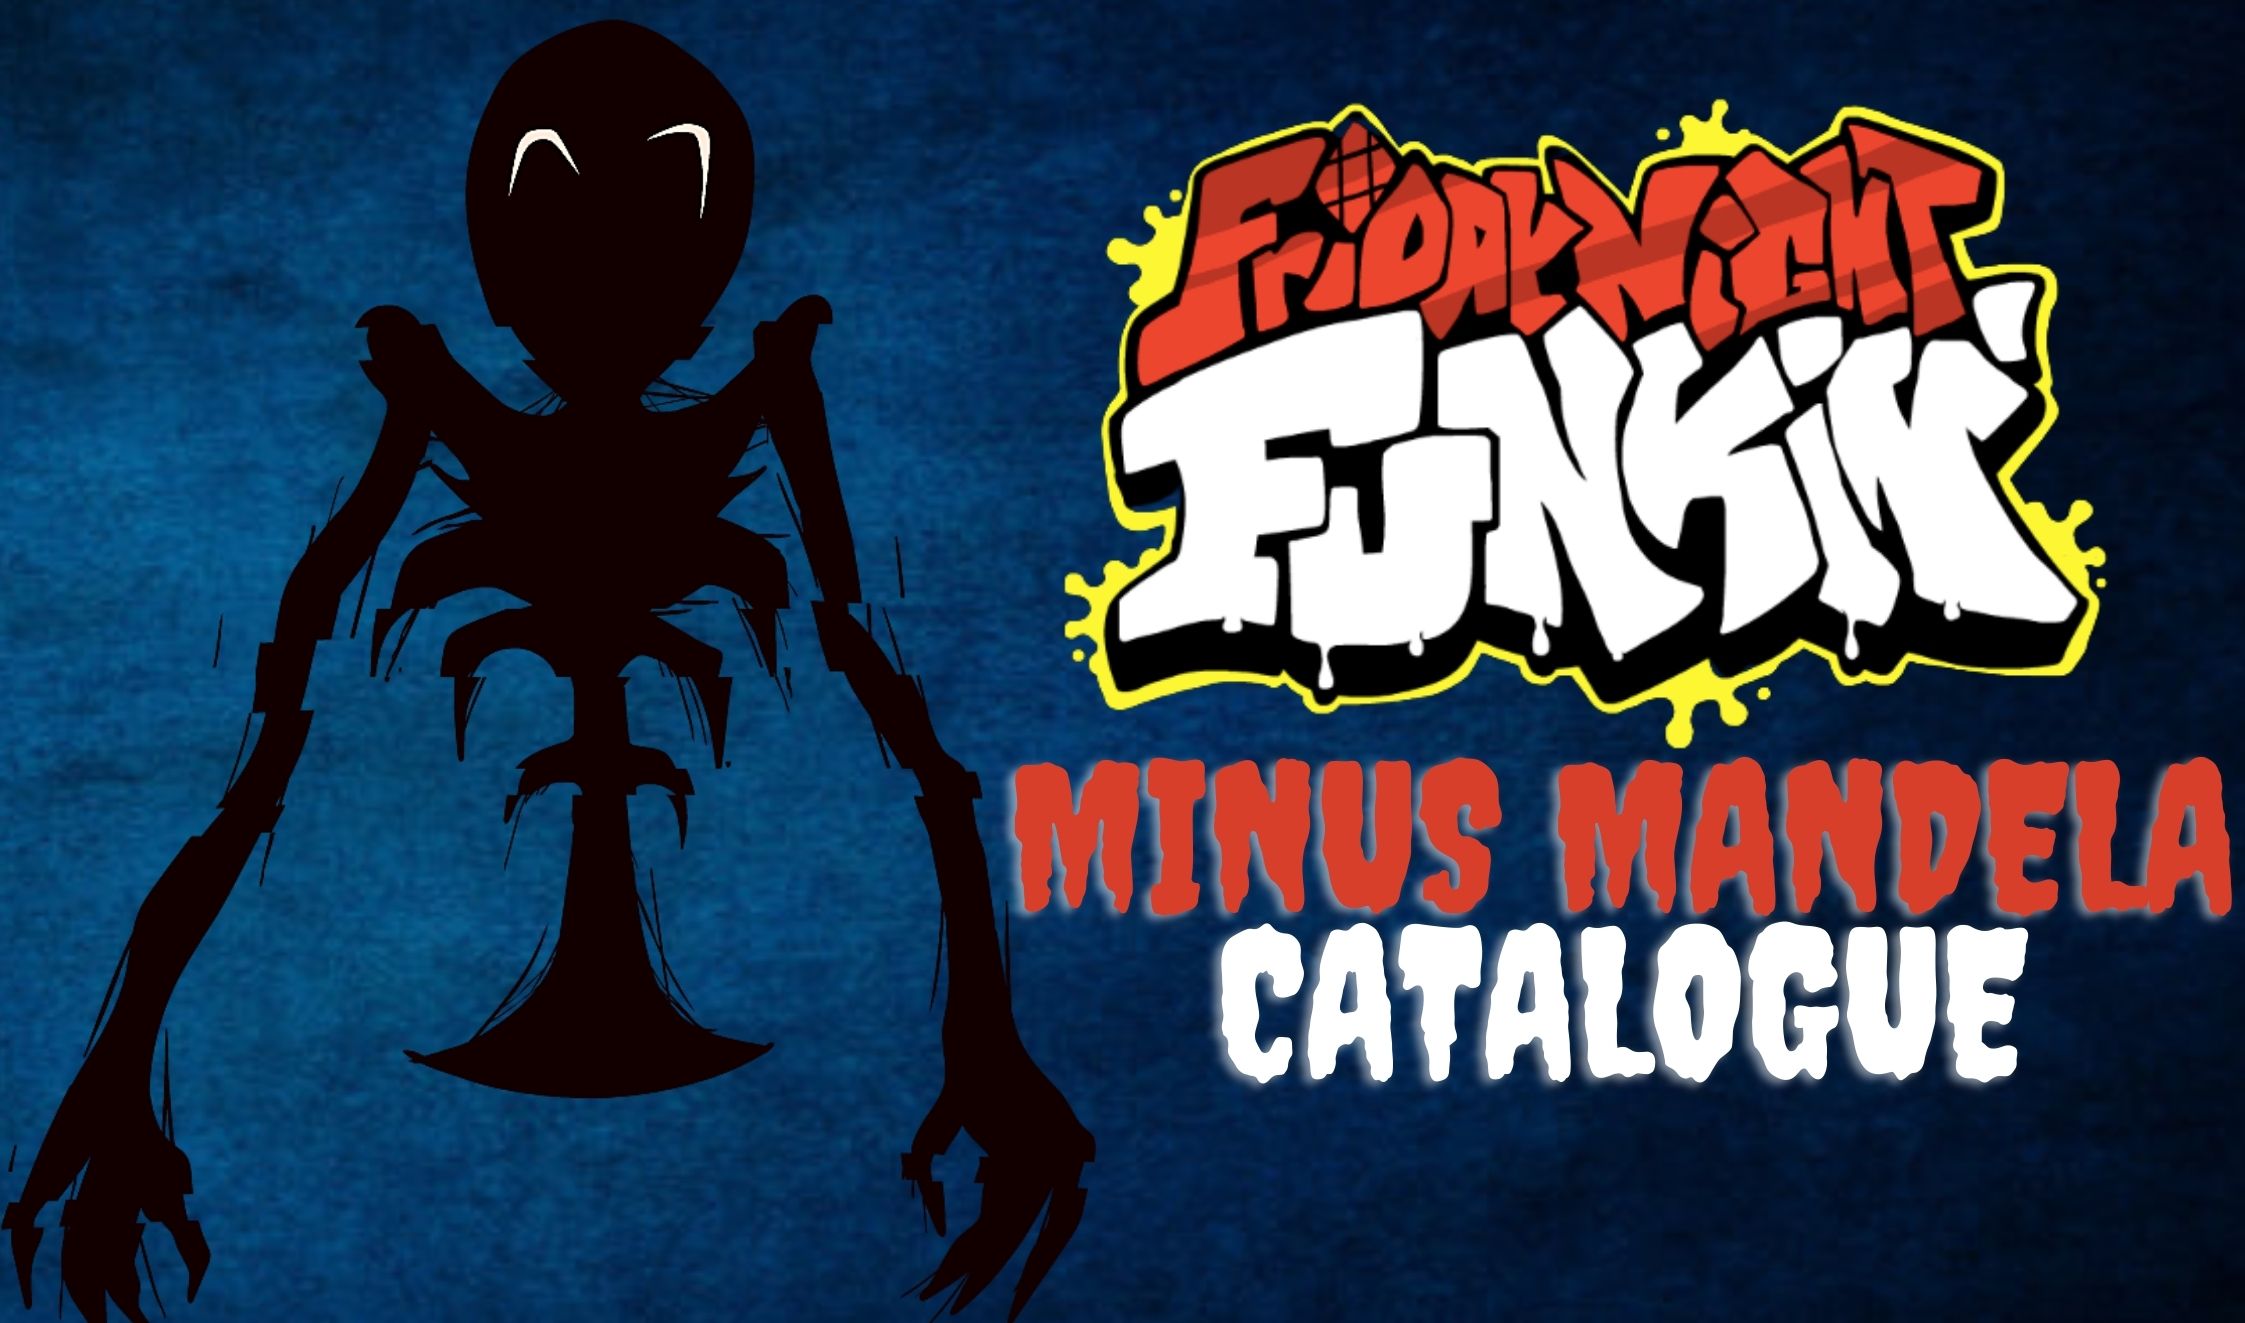 FNF vs Mandela catalogue Vol 2 Mod - Play Online Free - FNF GO